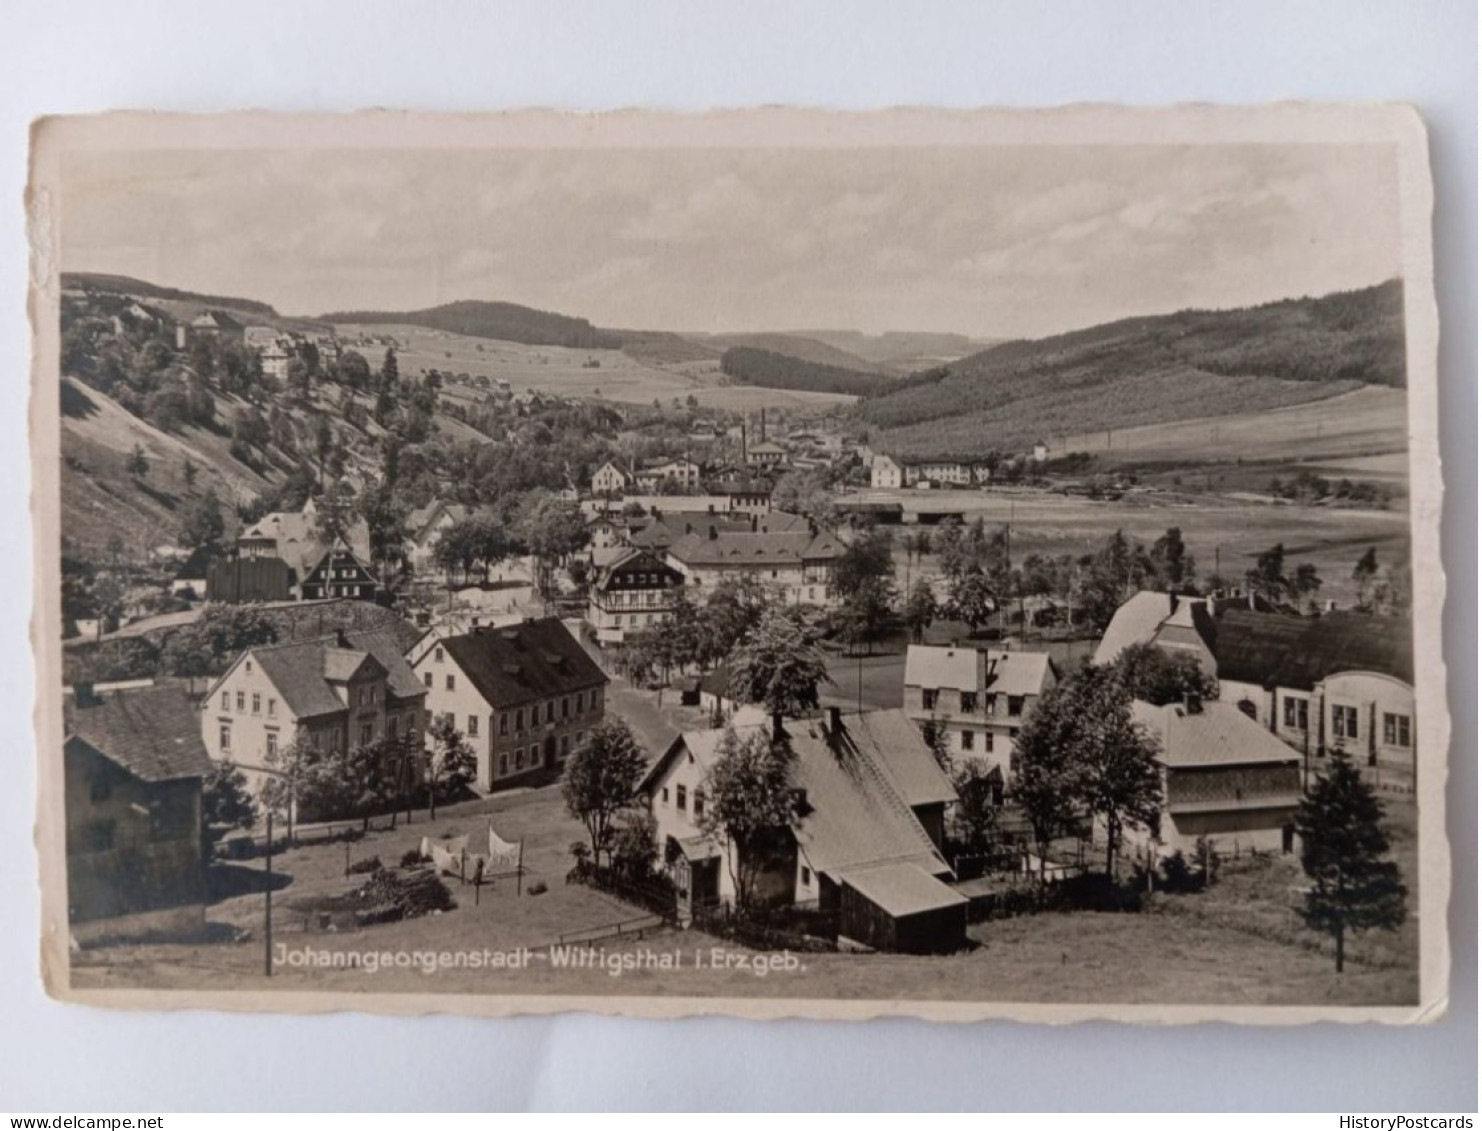 Johanngeorgenstadt-Wittigsthal Im Erzgebirge, Gesamtansicht, 1937 - Johanngeorgenstadt